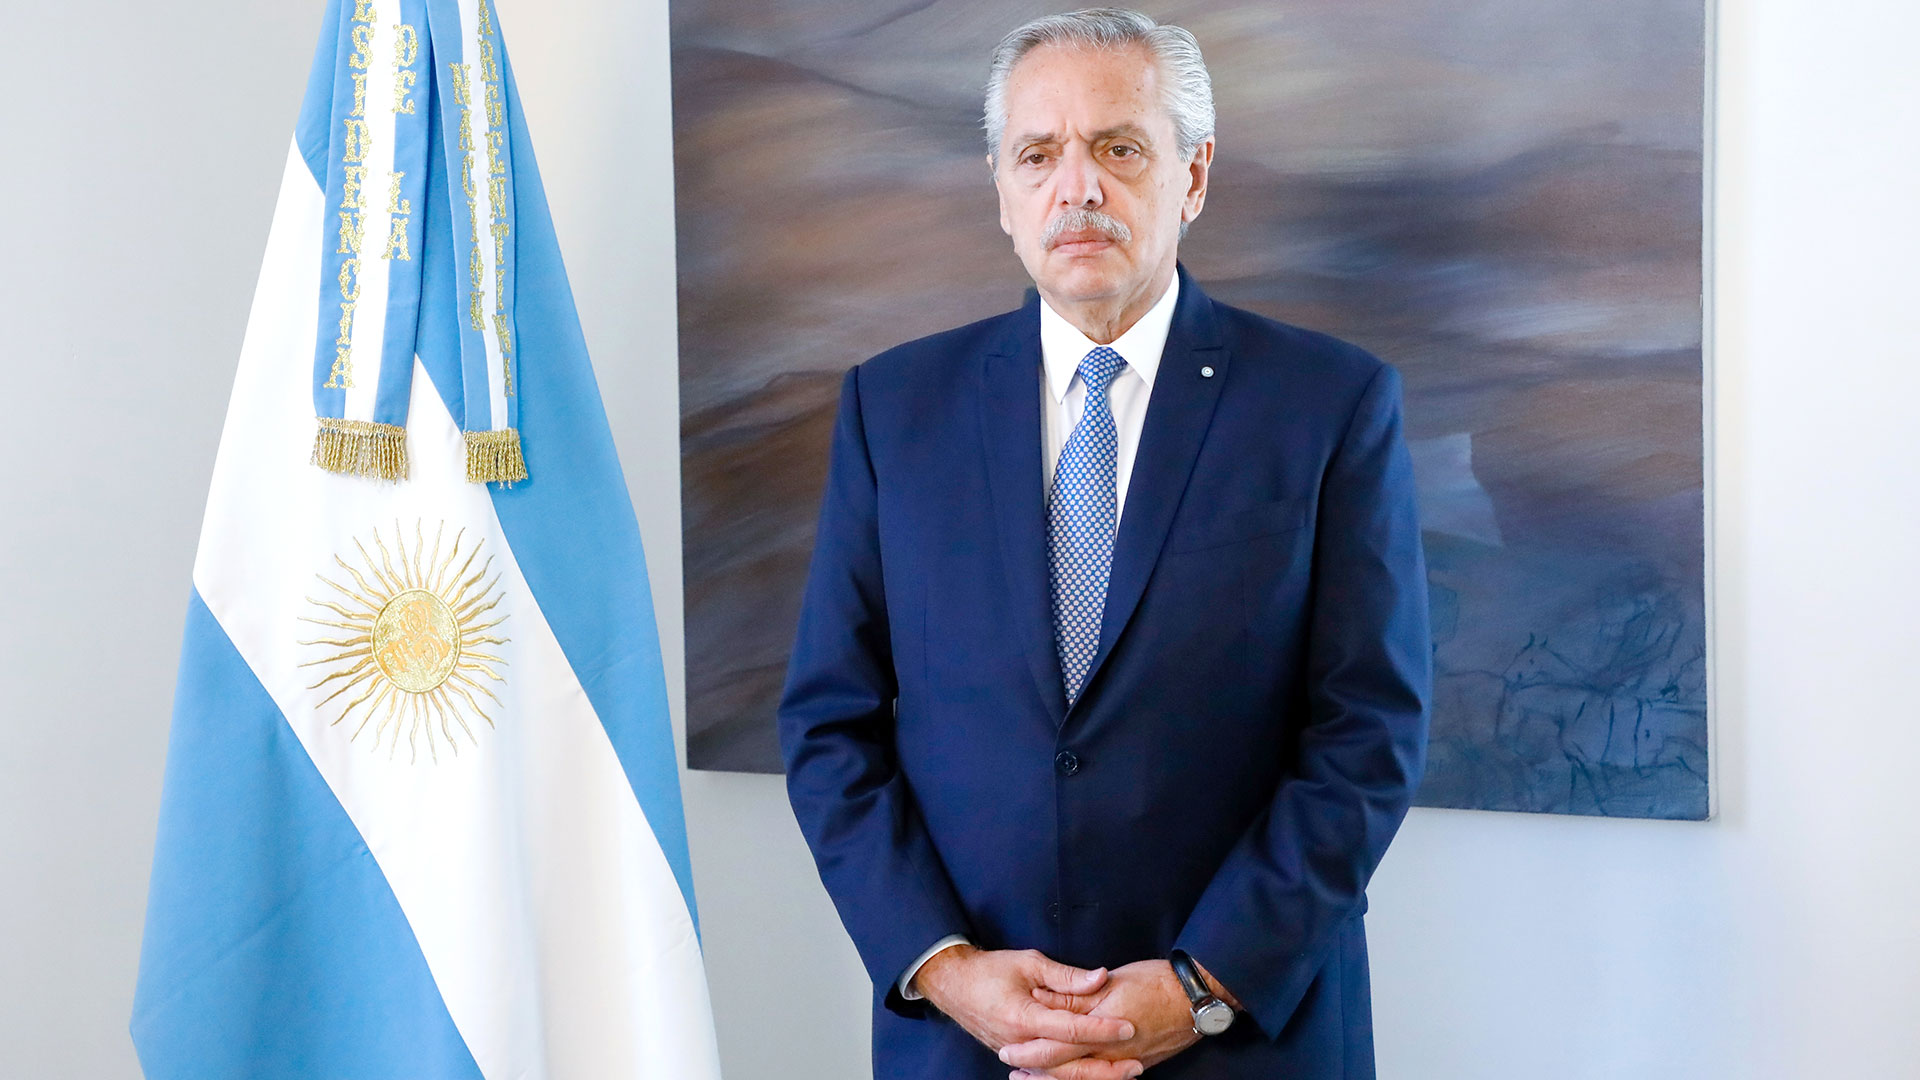 Alberto Fernández grabó el mensaje sobre Rosario esta mañana en Olivos (Presidencia)